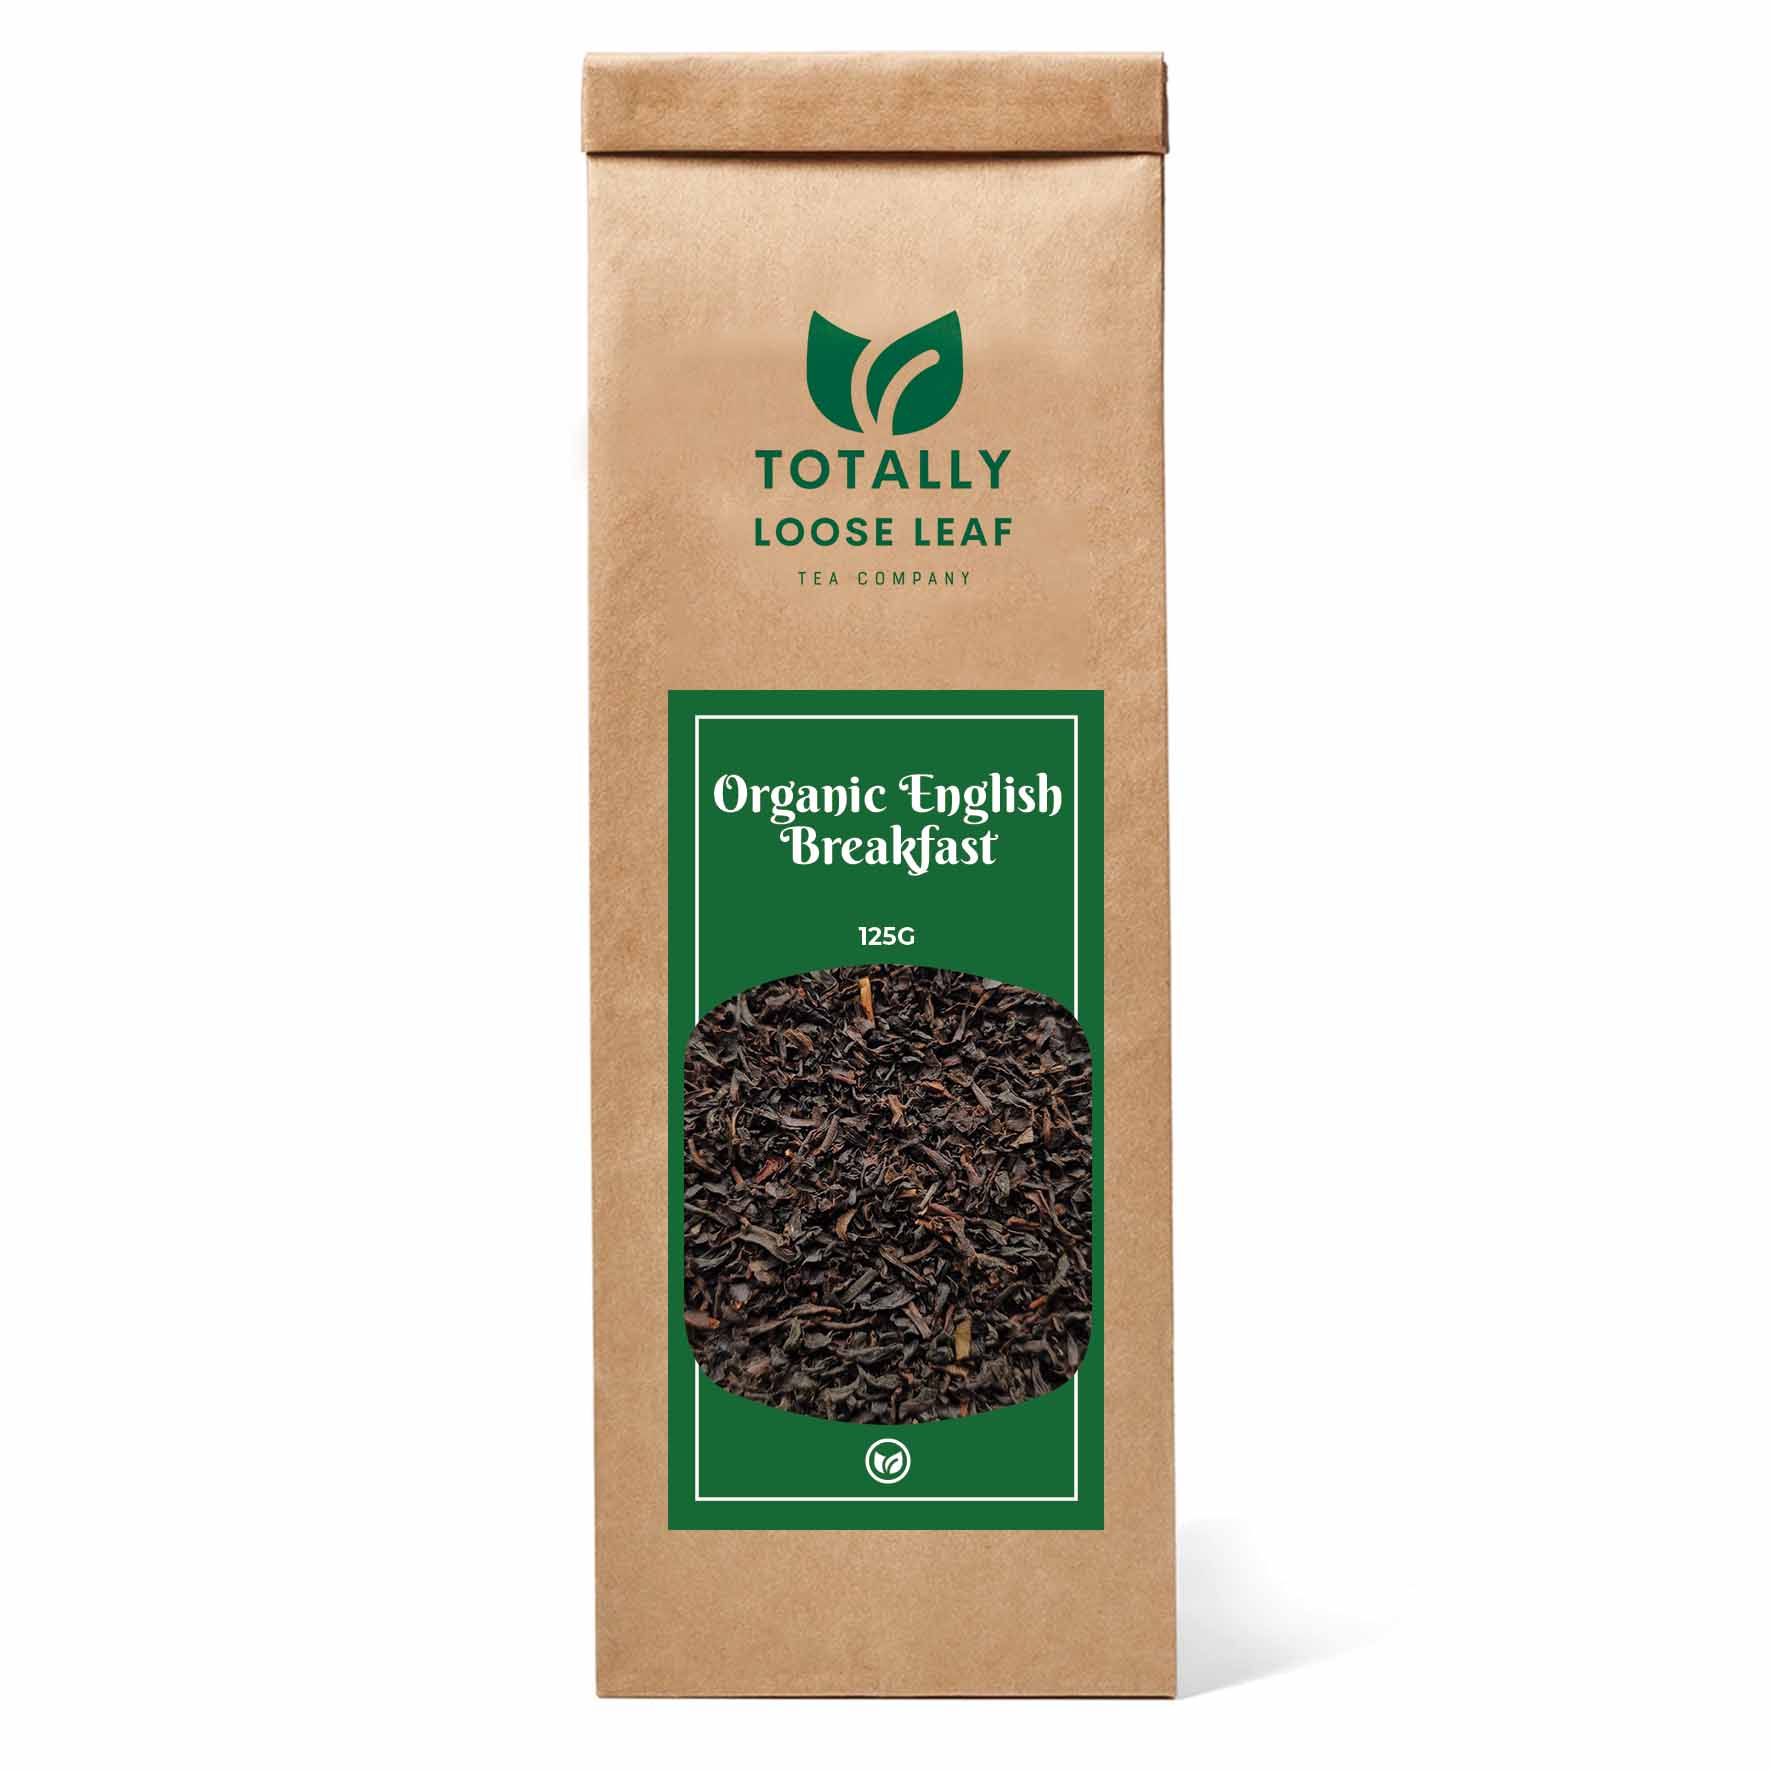 Organic English Breakfast Loose Leaf Tea - one pouch